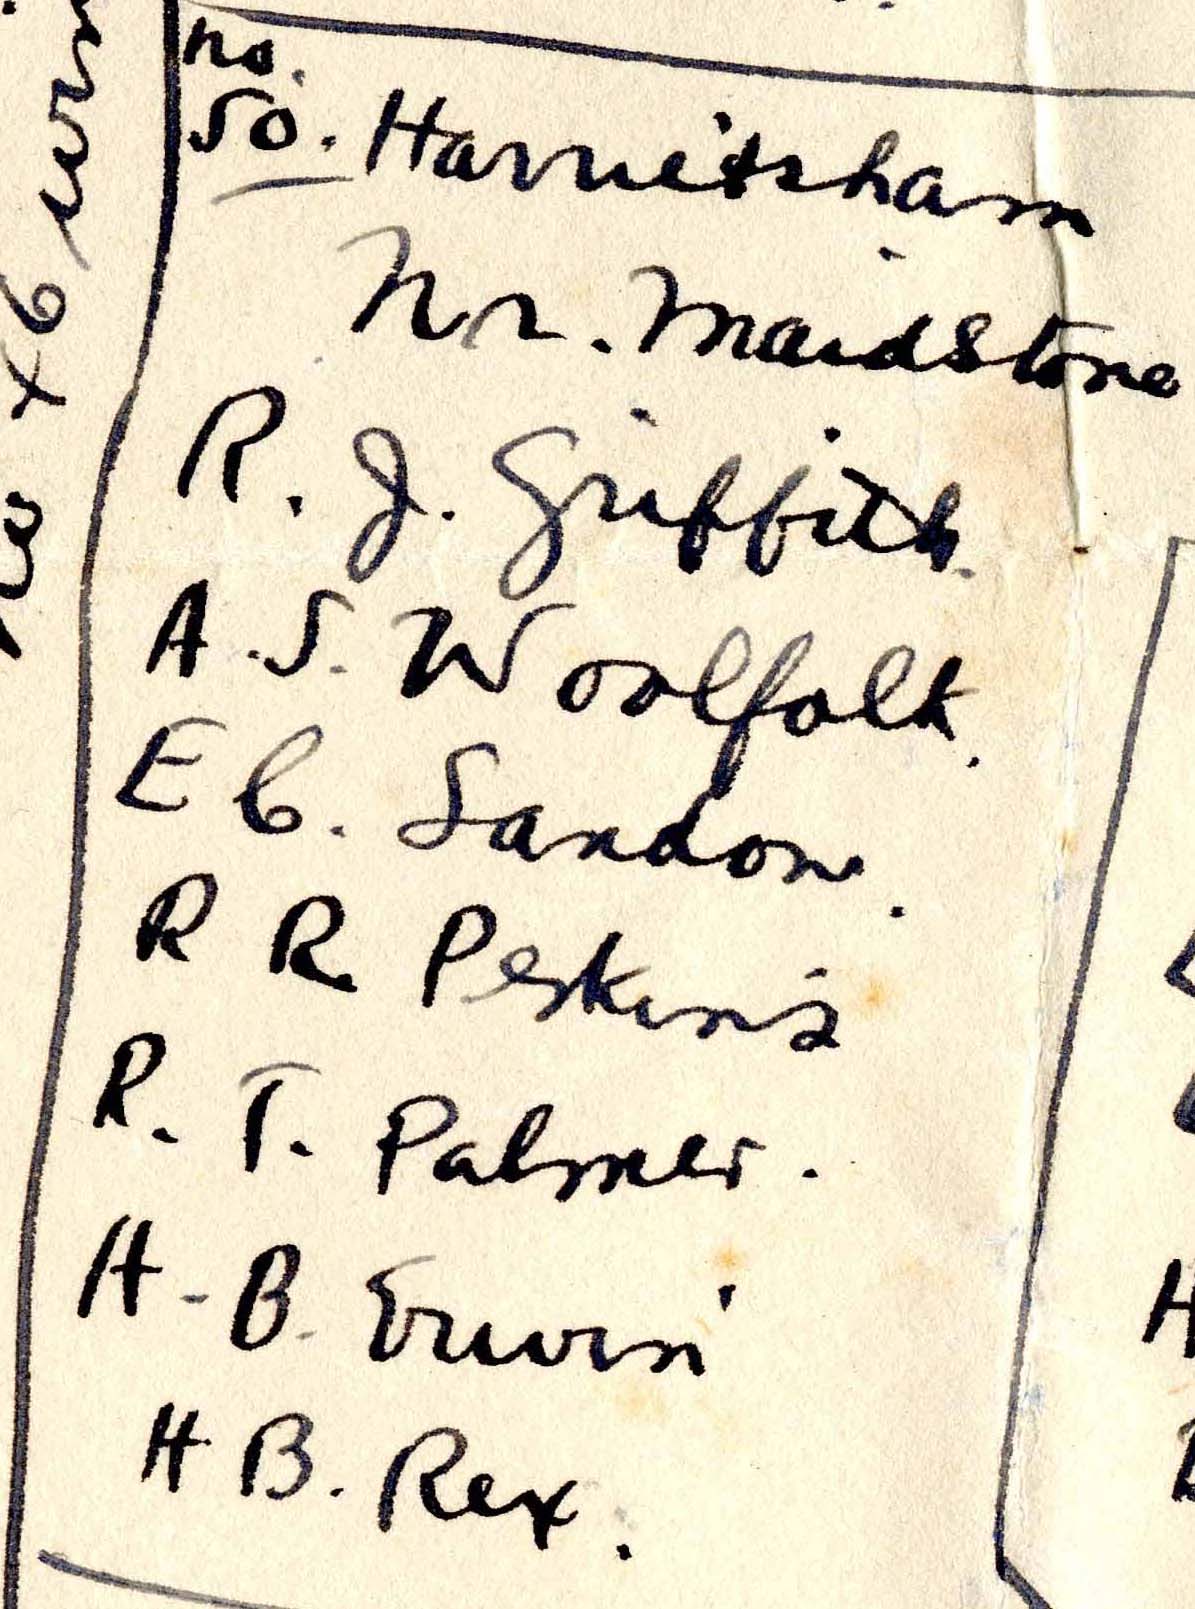 A handwritten list of seven names under the heading "No. 50 Harrietsham."